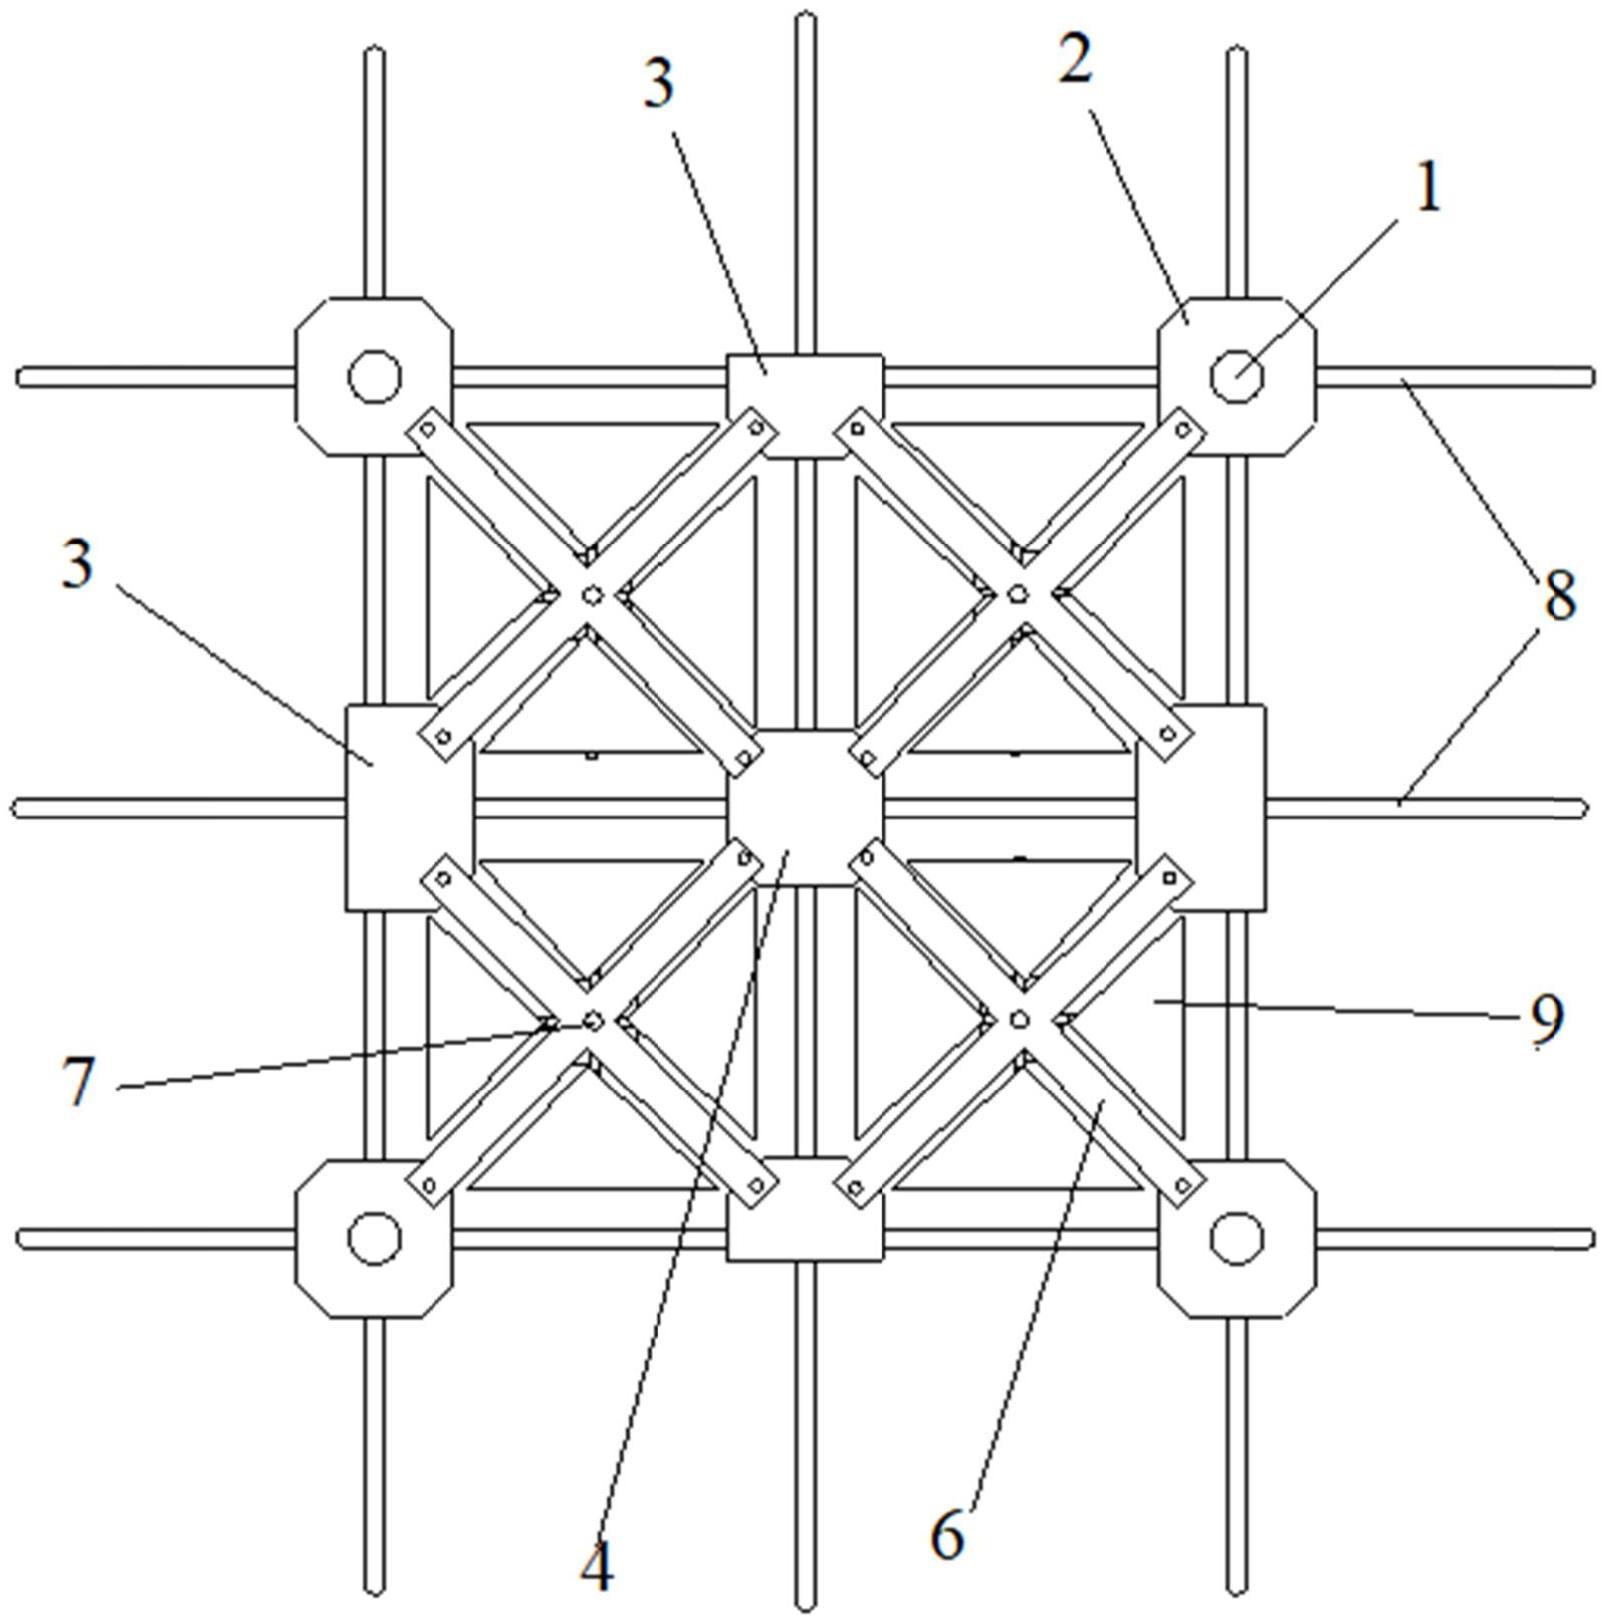 高空悬索光伏支架结构的制作方法